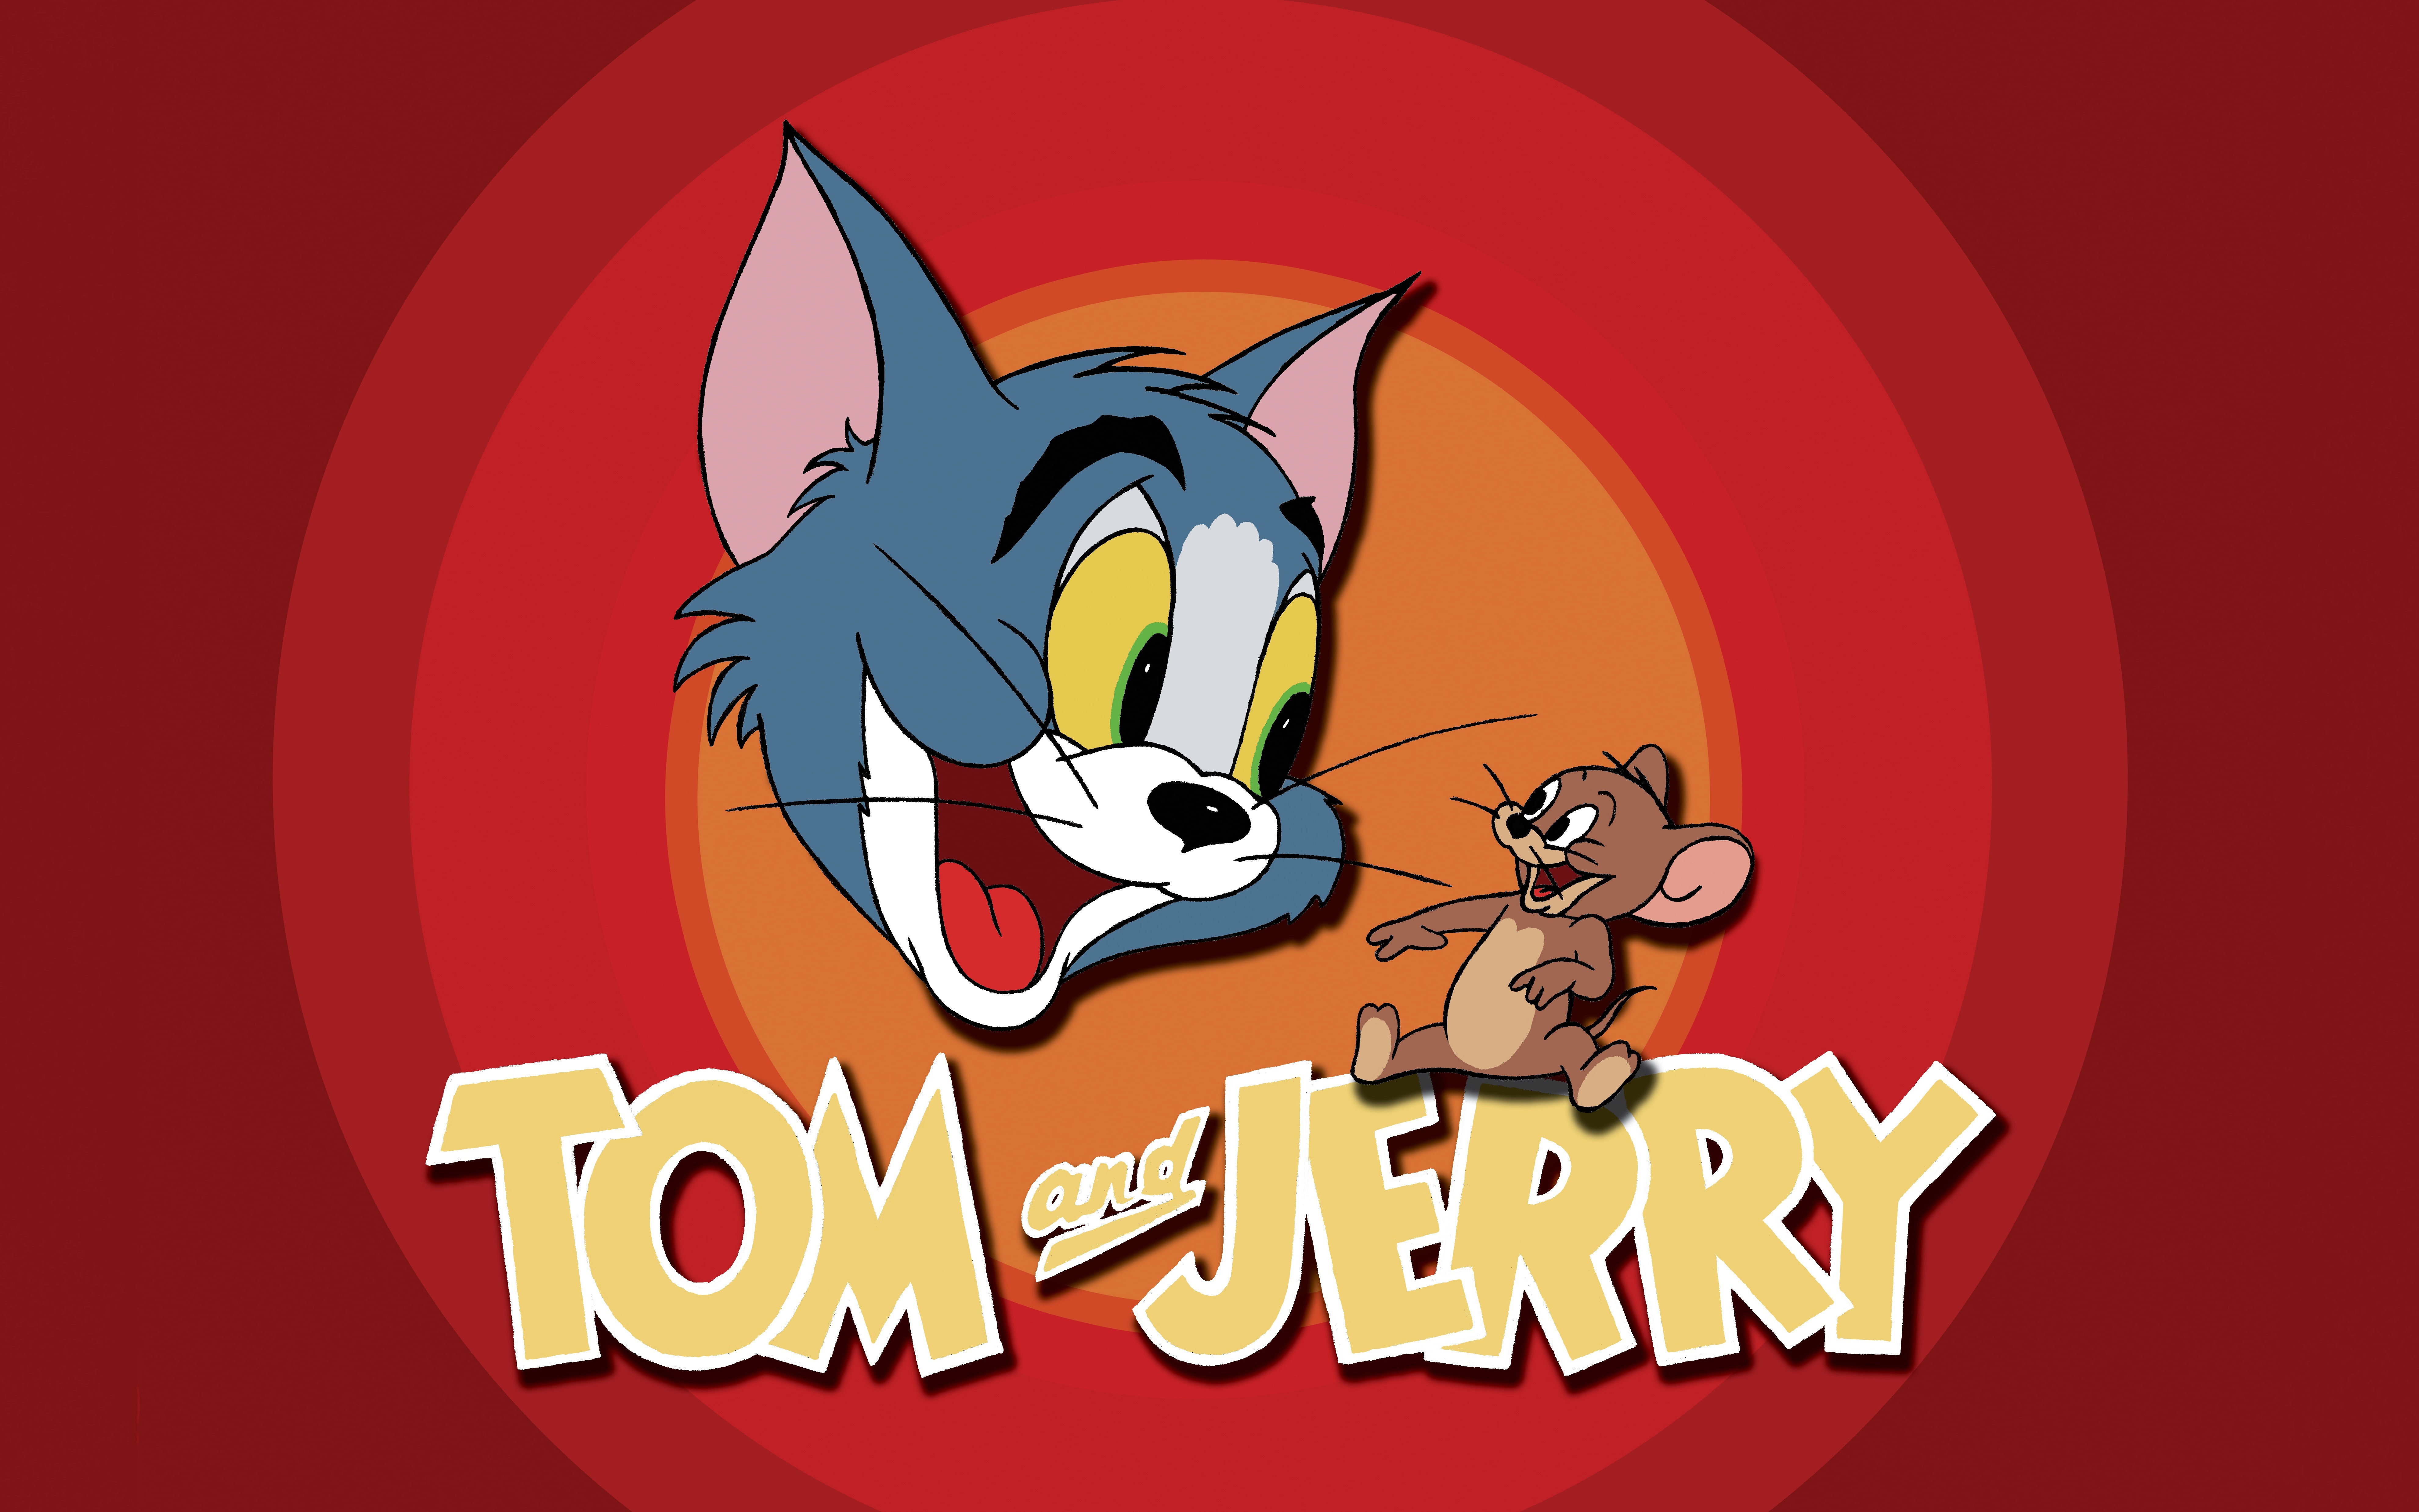 Игр й том. Том и Джерри (Tom and Jerry) 1940. Том и Джерри 1986 год. Заставка мультфильма том и Джерри.